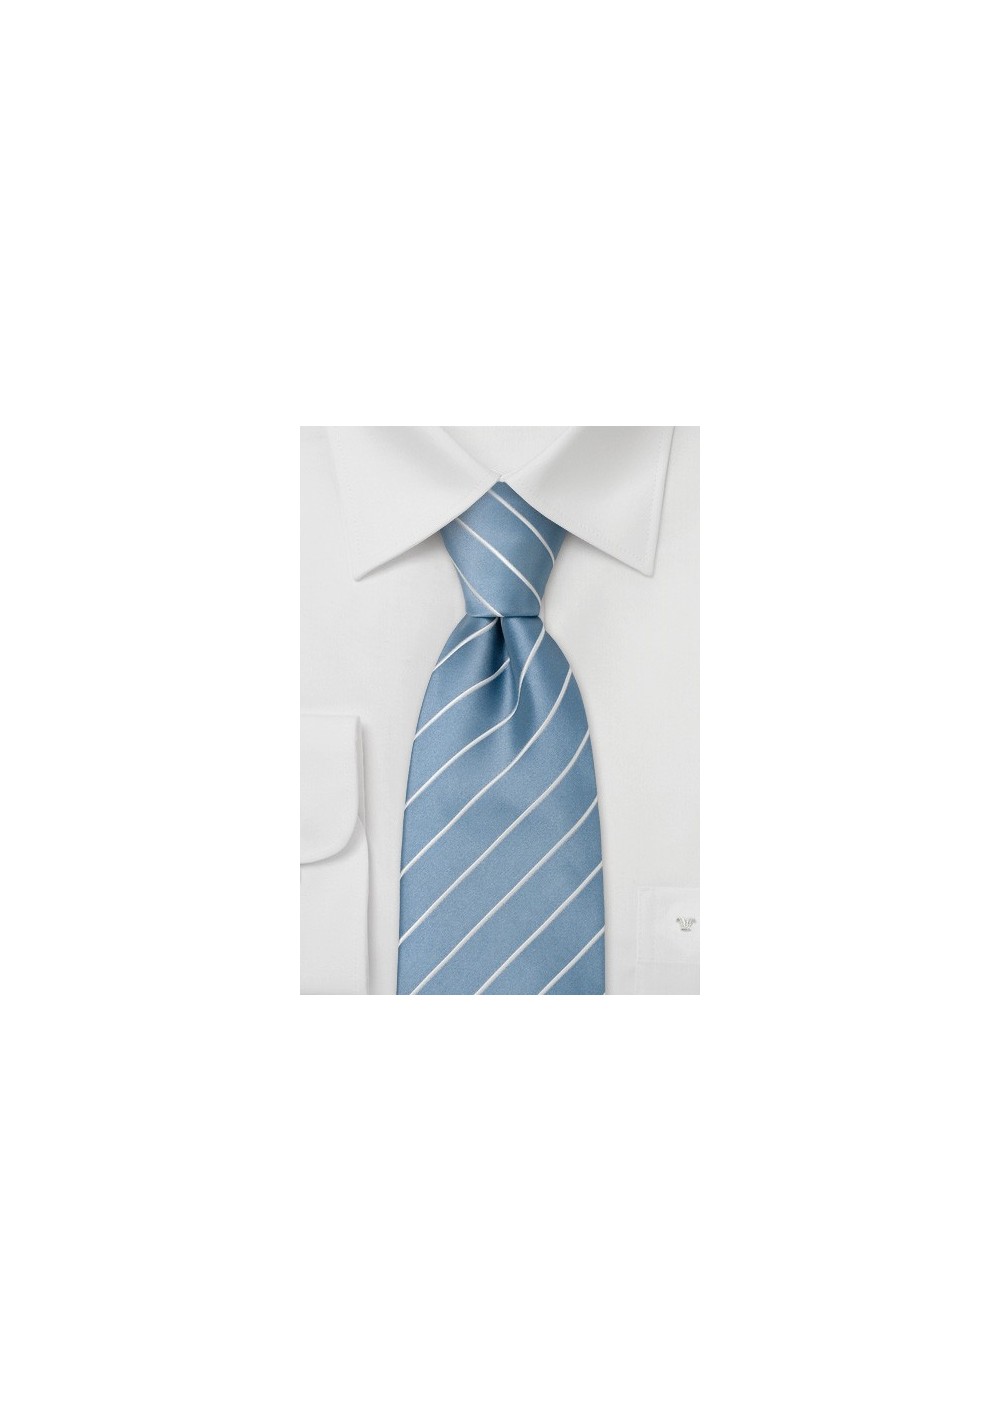 Extra long ties - Light blue striped silk tie